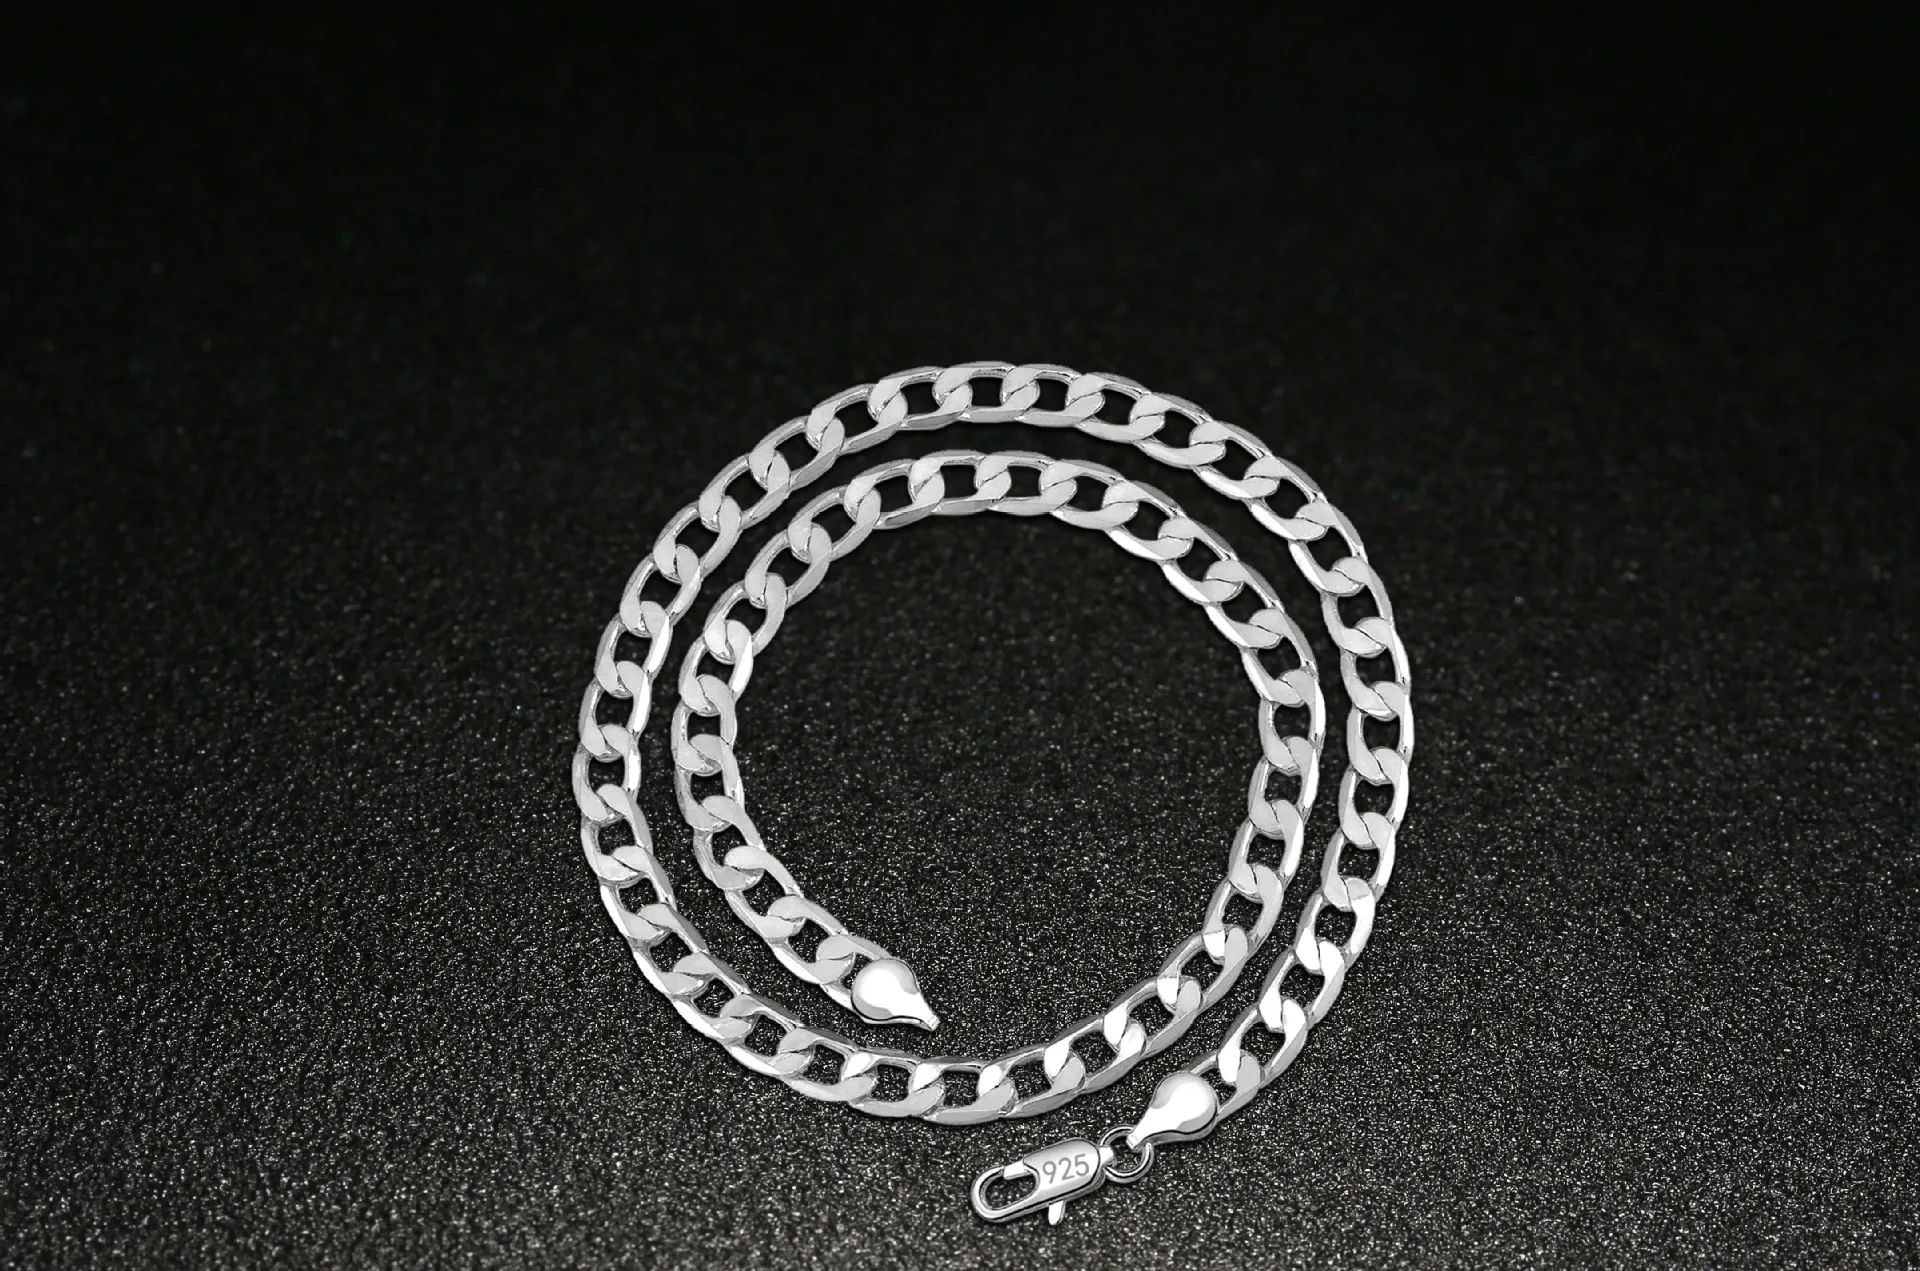 OMHXZJ индивидуальная мода унисекс праздничный свадебный подарок серебро 8 мм Фигаро Цепь 925 серебро цепь ожерелье NC196